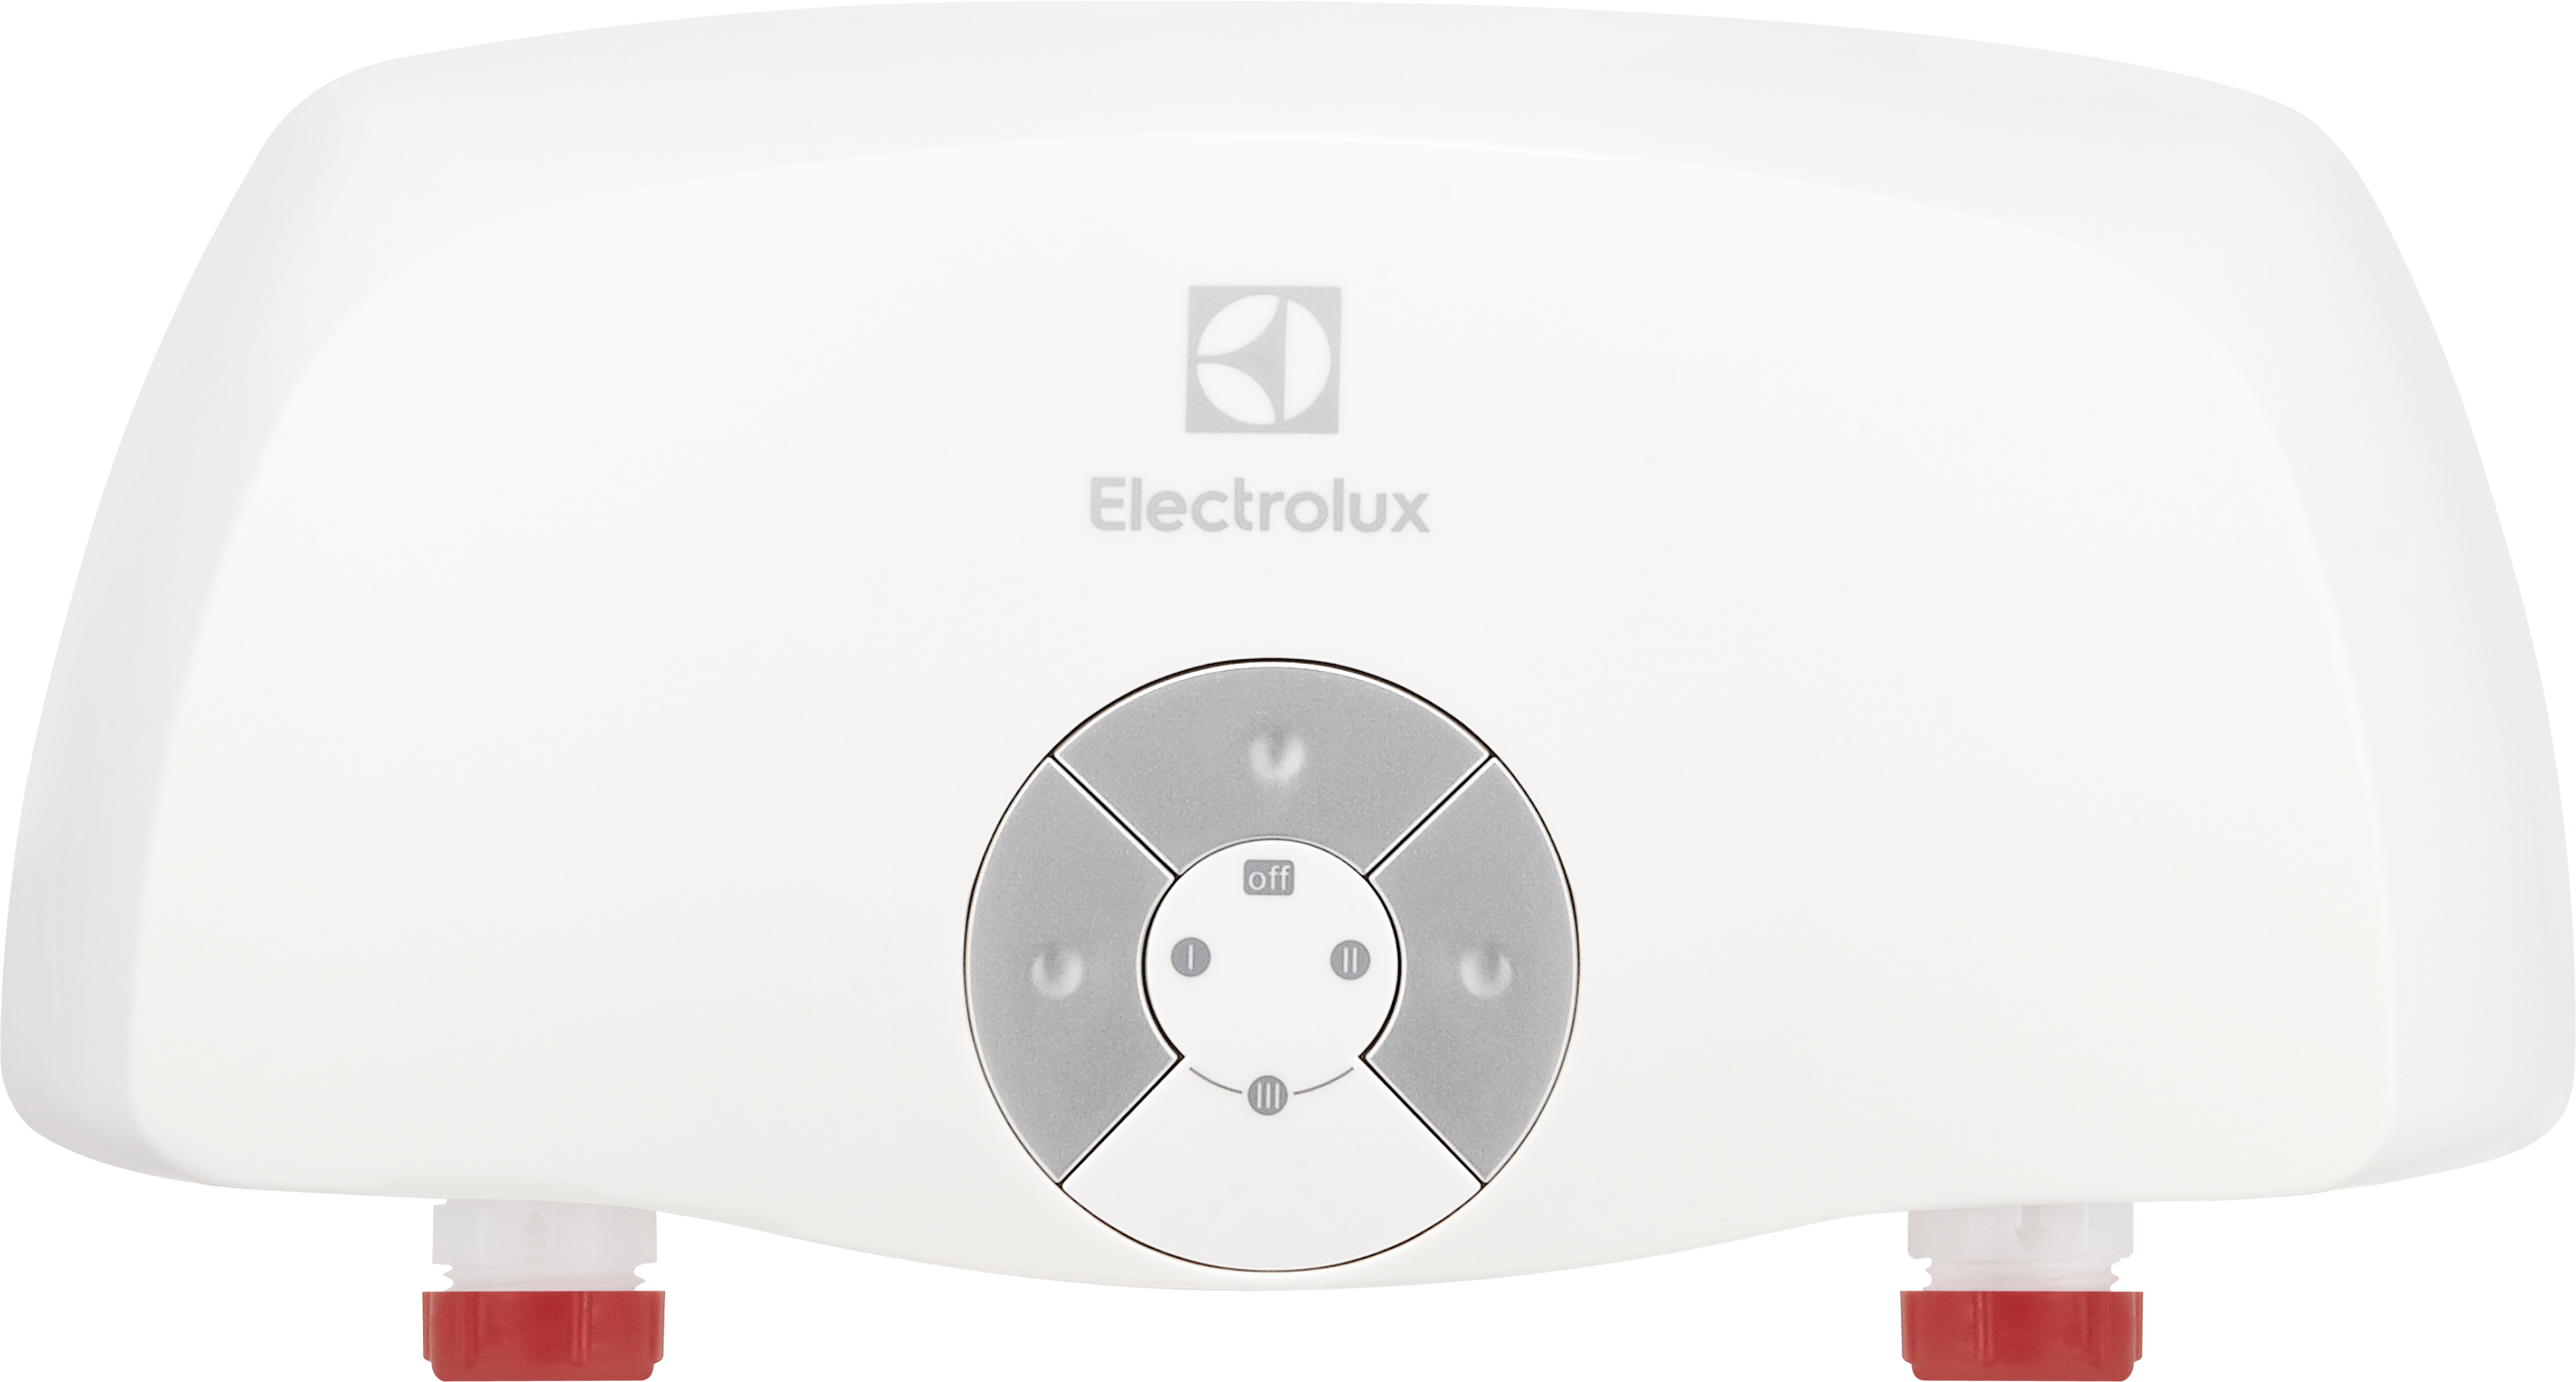 Electrolux Smartfix 3.5 S